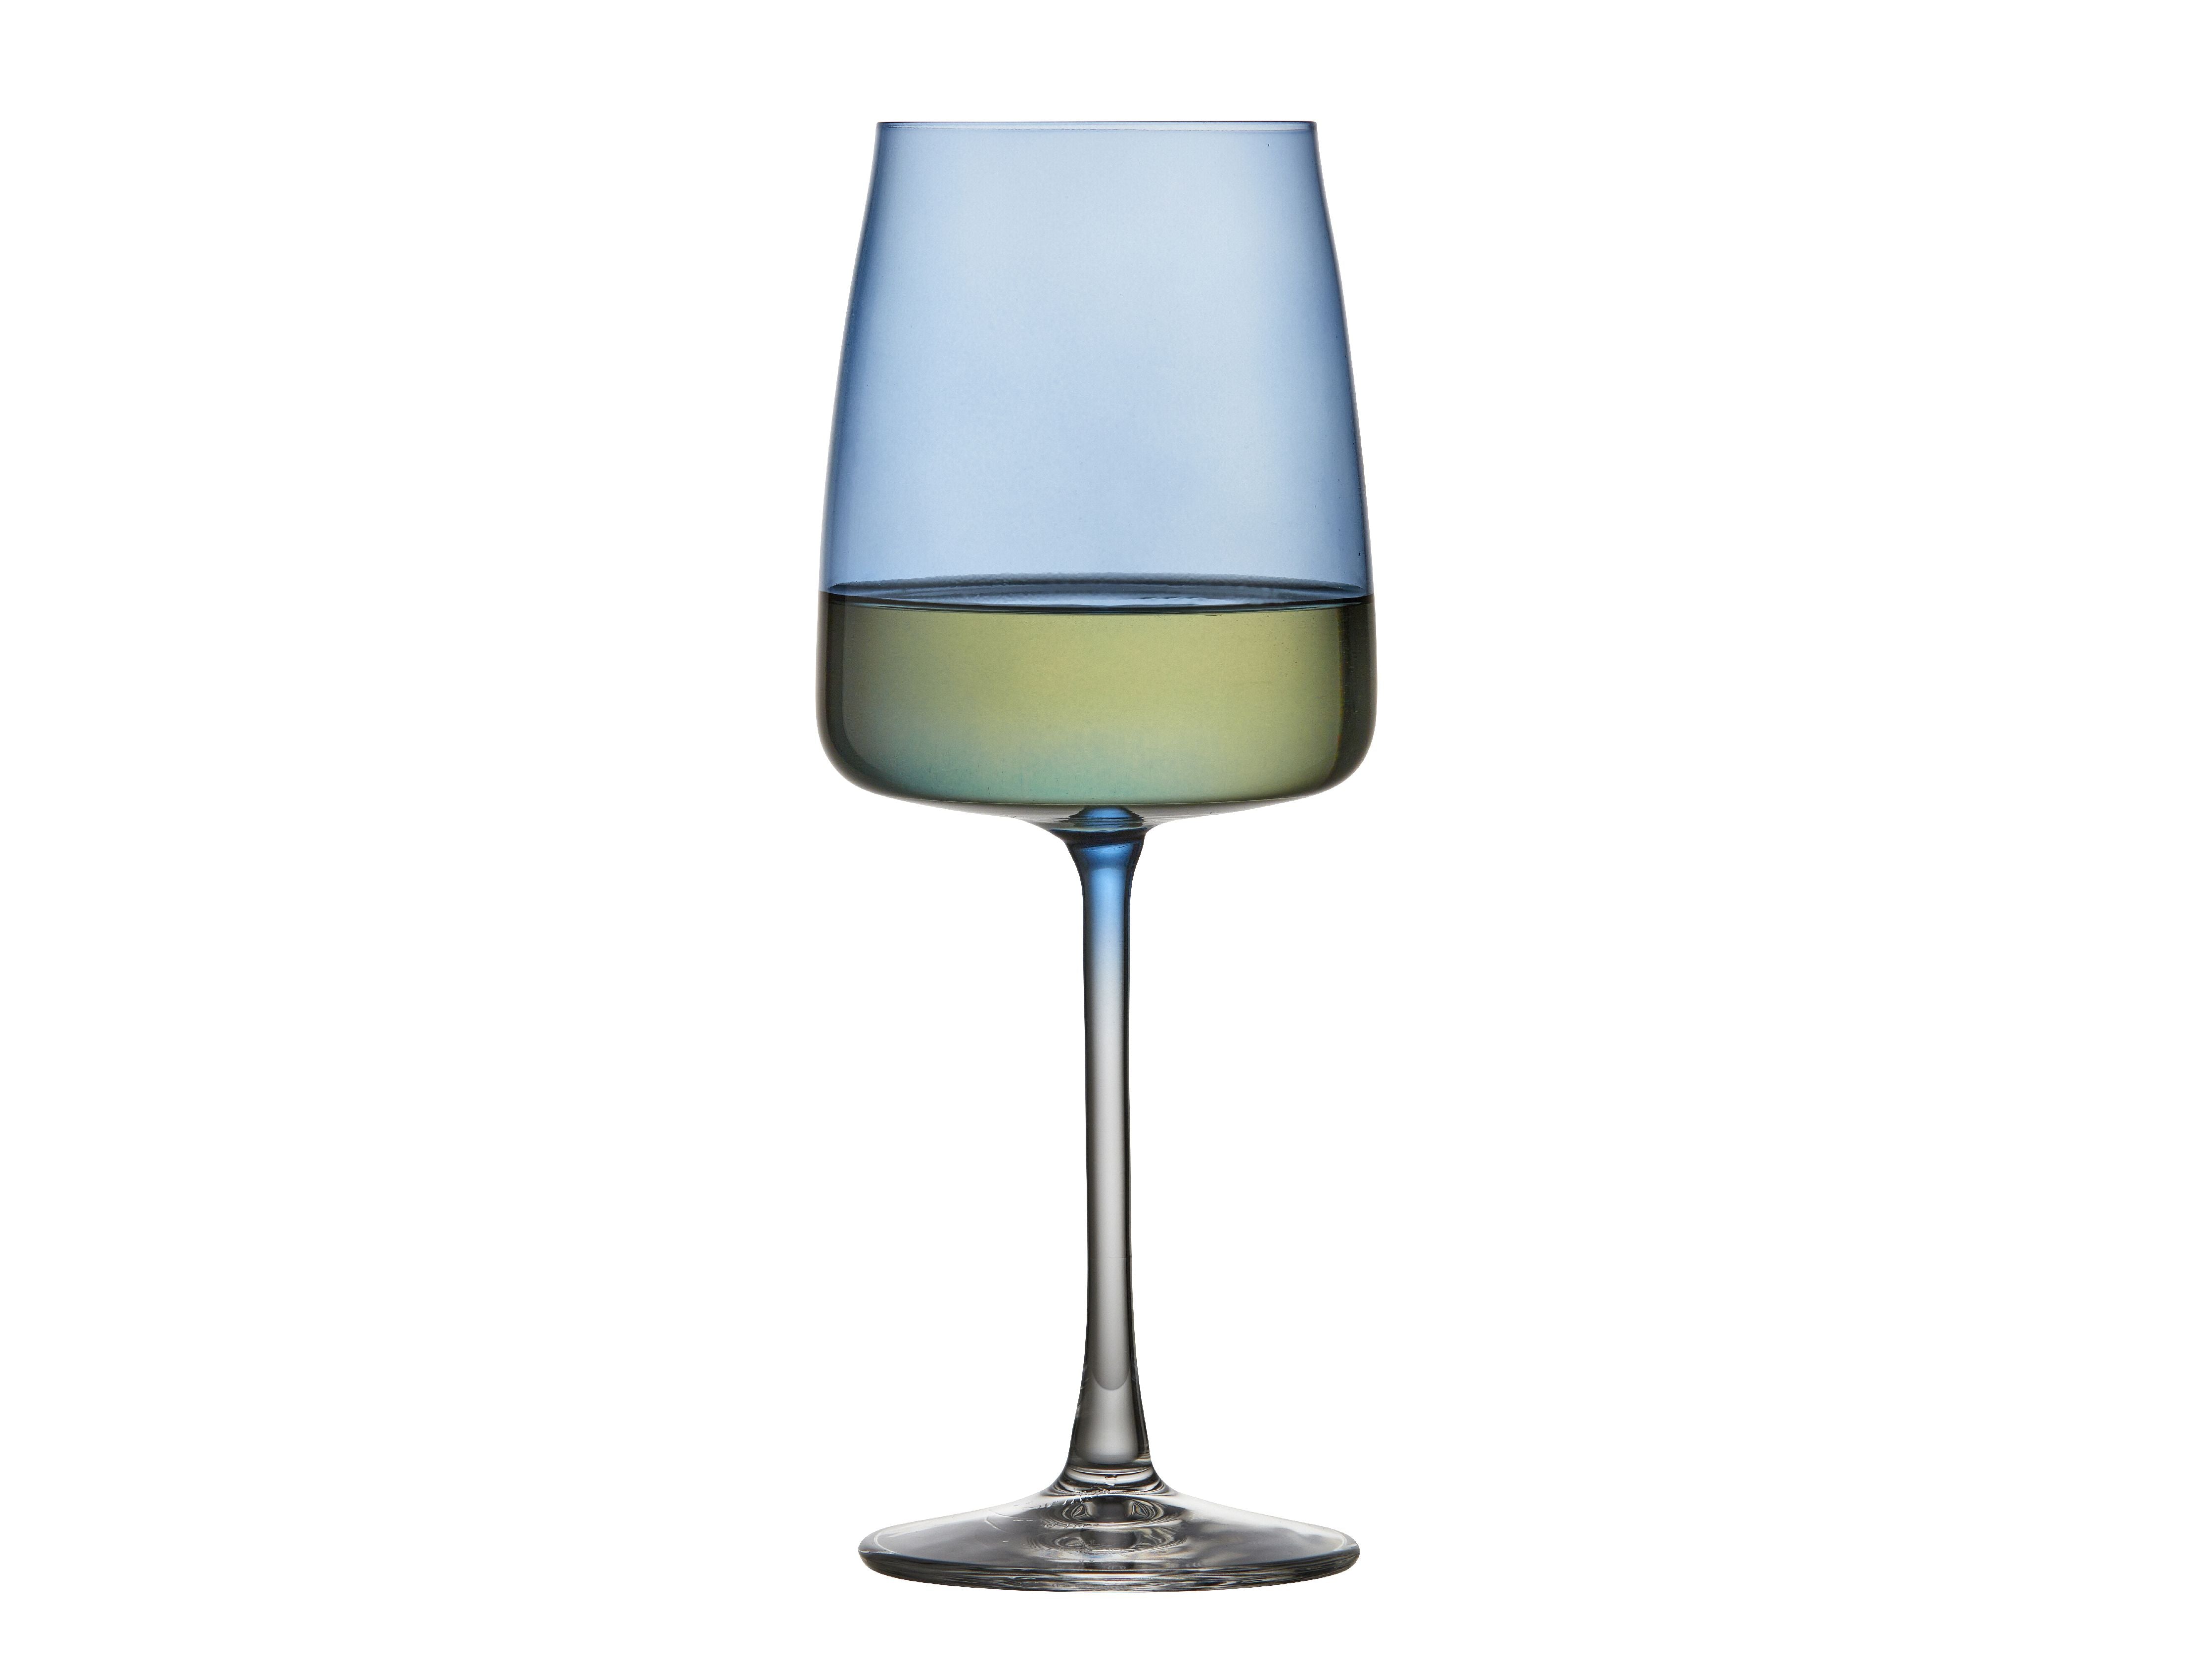 Lyngby Glas Krystal Zero White Wine Glass 43 Cl 4 Pcs, Blue